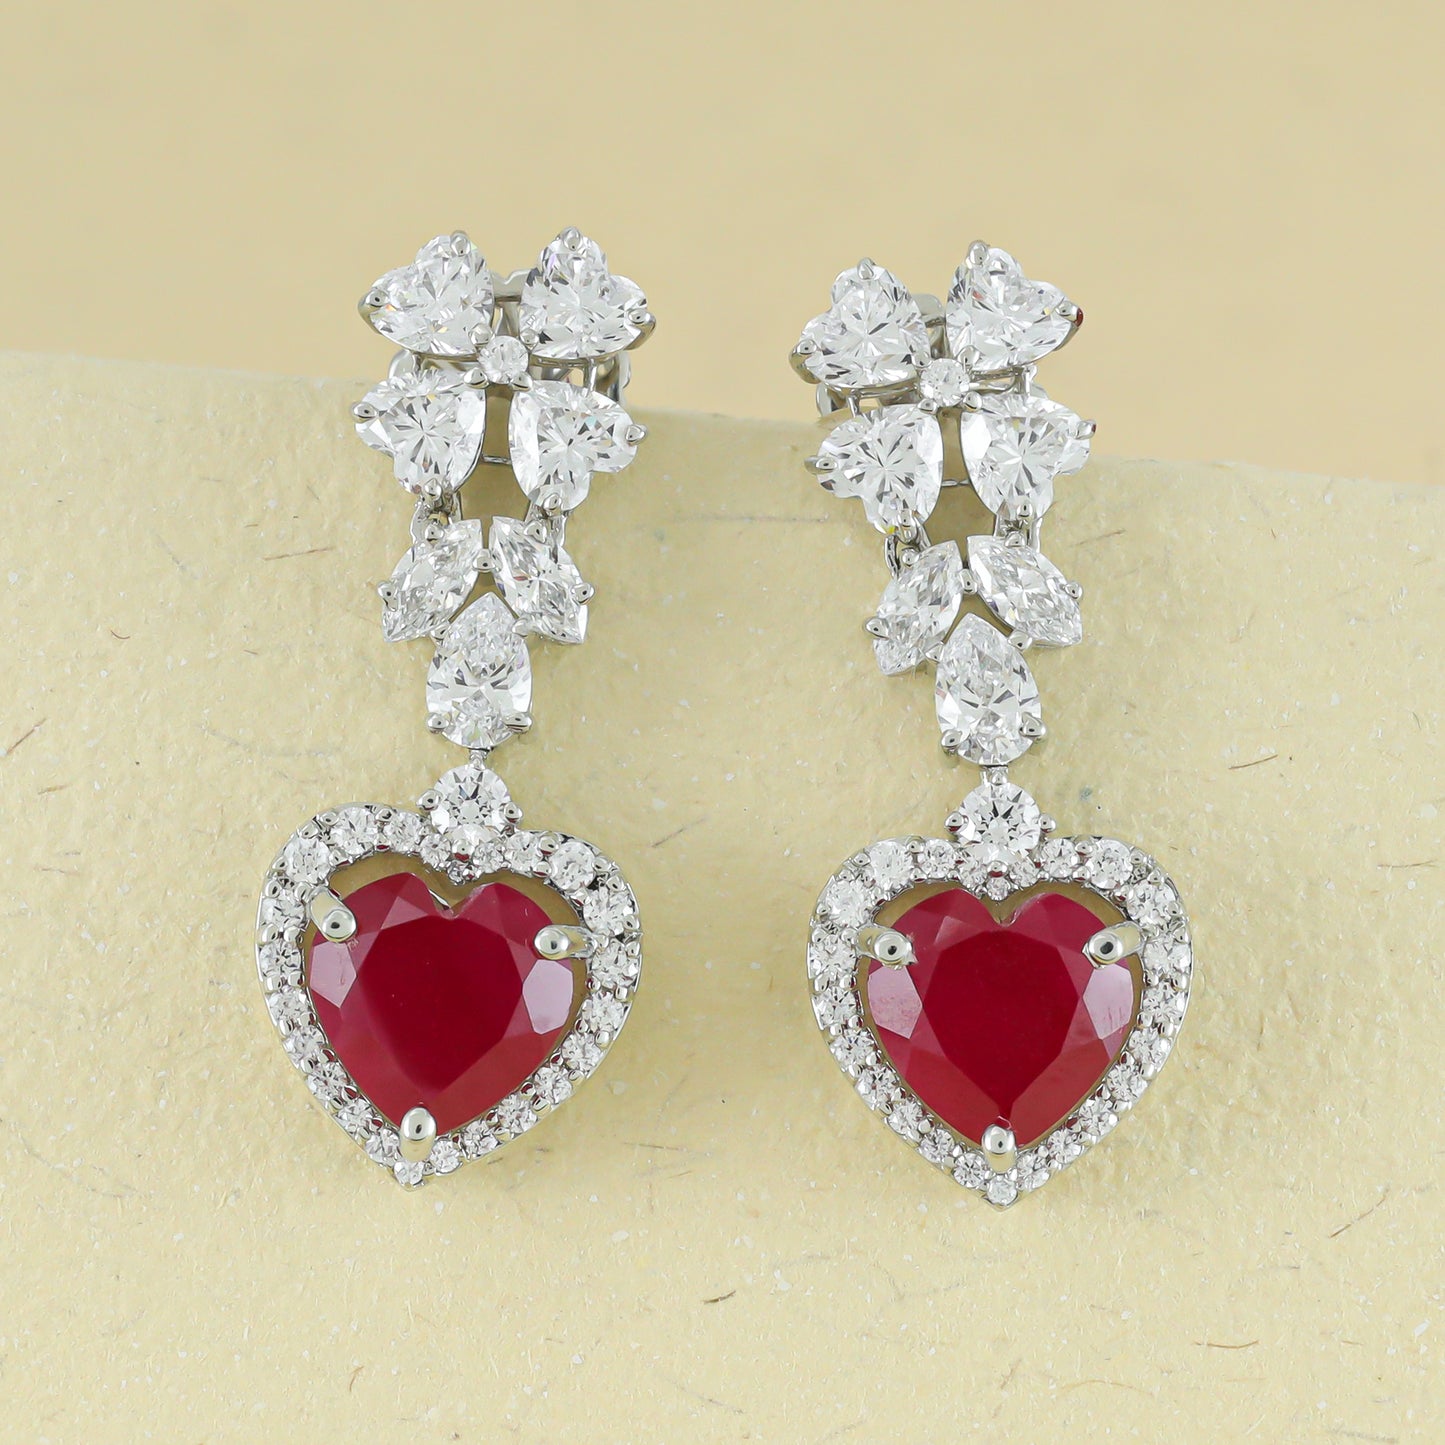 Red Heart Drop Silver Earrings with Fancy Shaped Swarovski Zirconia